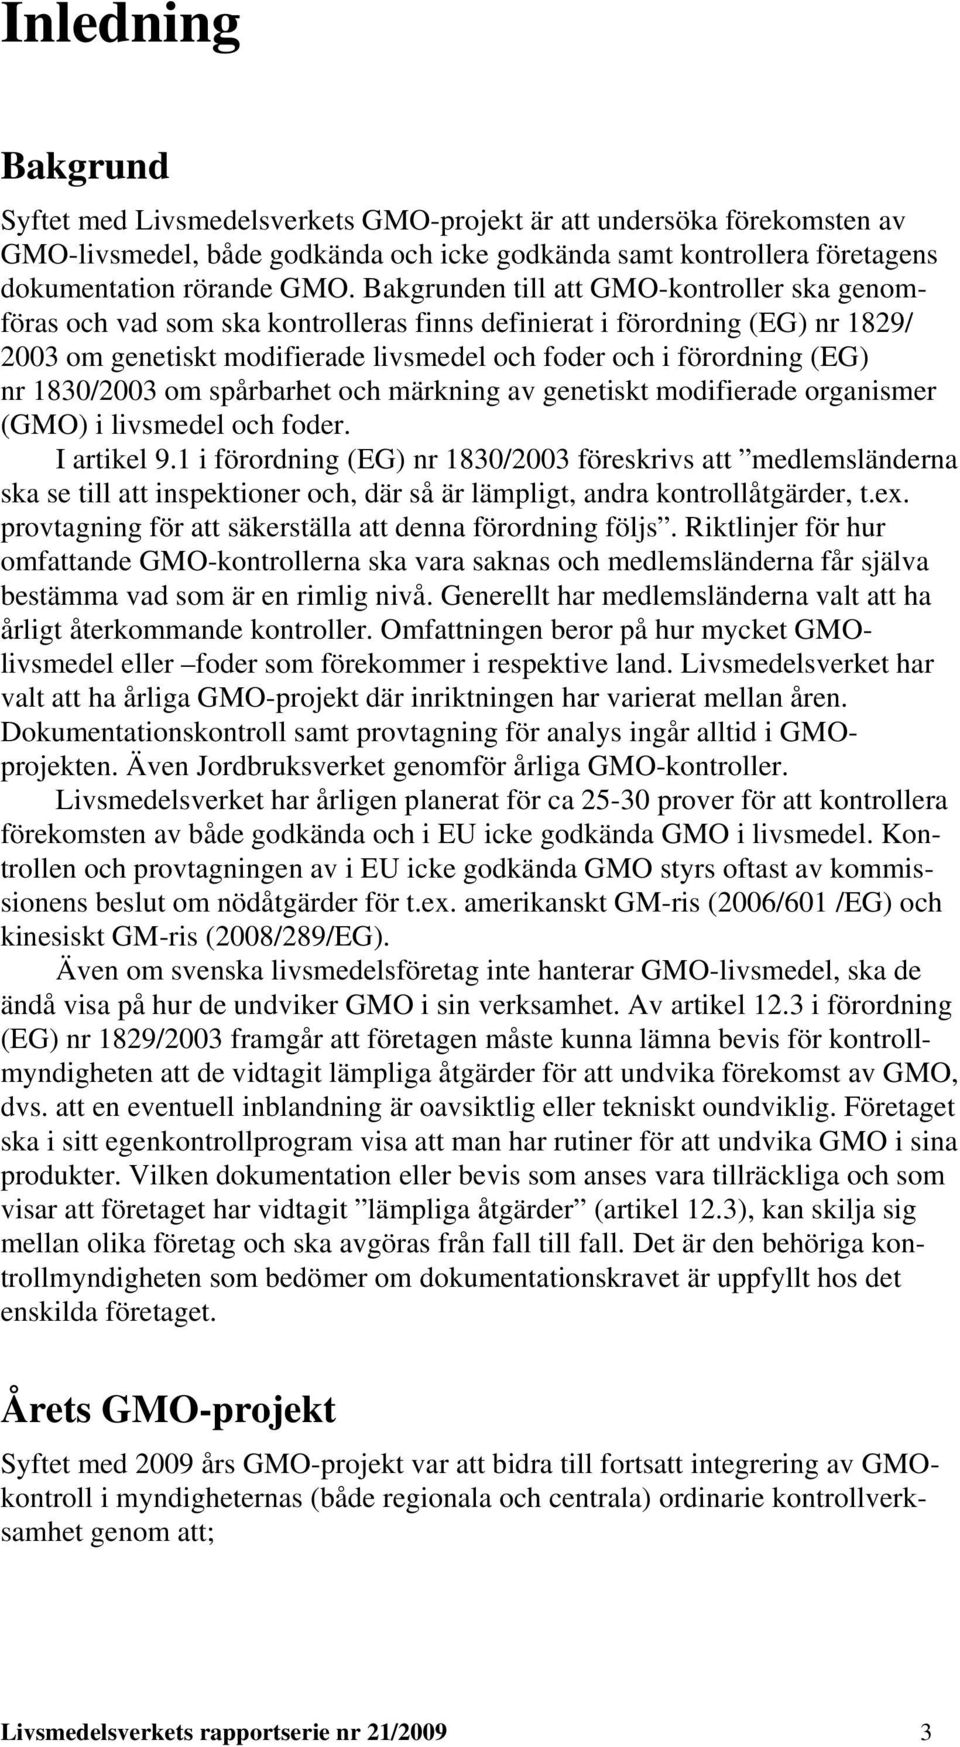 1830/2003 om spårbarhet och märkning av genetiskt modifierade organismer (GMO) i livsmedel och foder. I artikel 9.